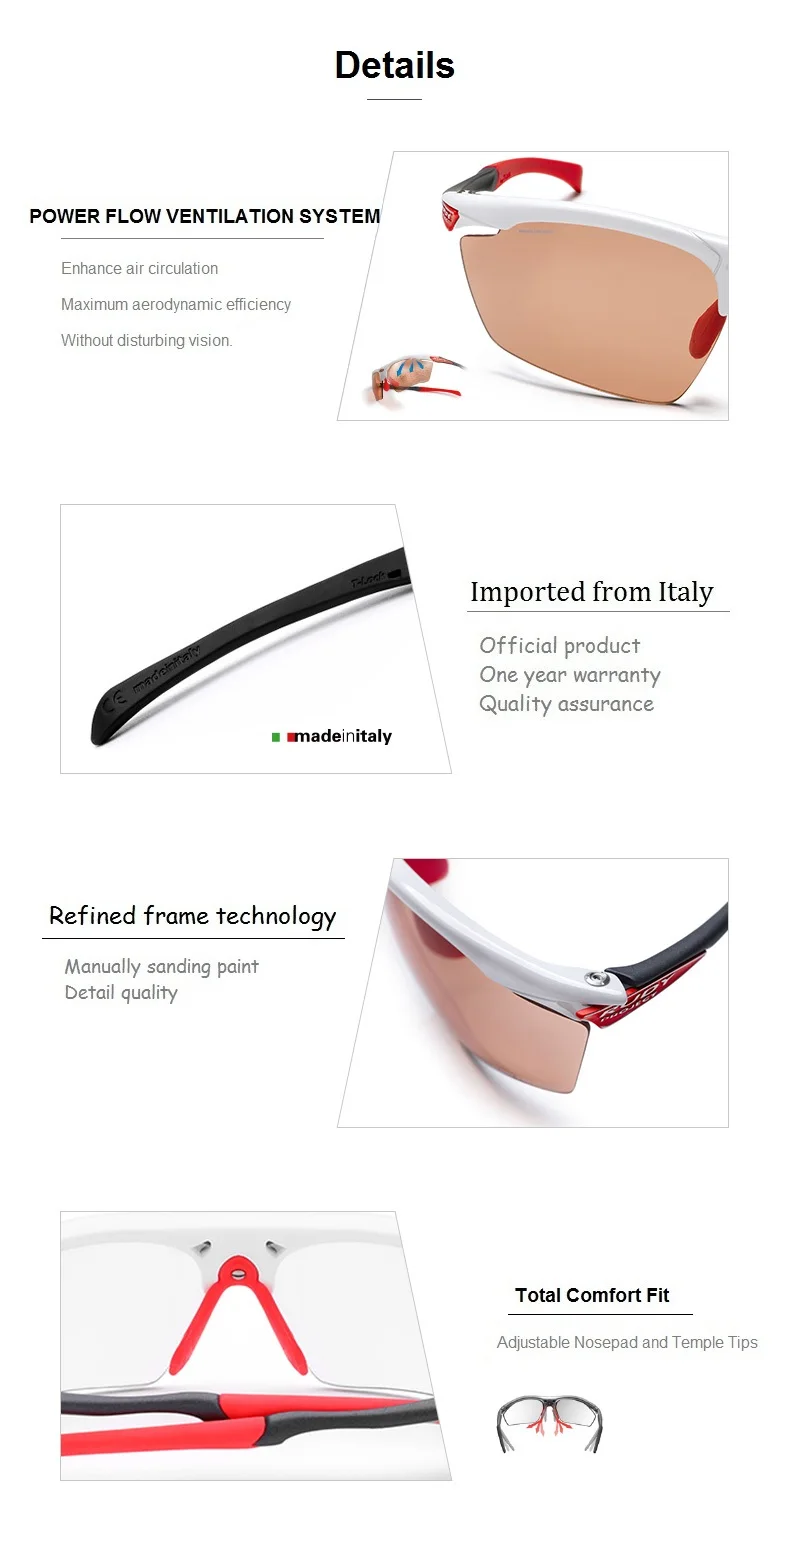 RUDY проект AGON-солнцезащитные очки с покрытием изменение цвета очки для мужчин и женщин езда вождения спортивные очки